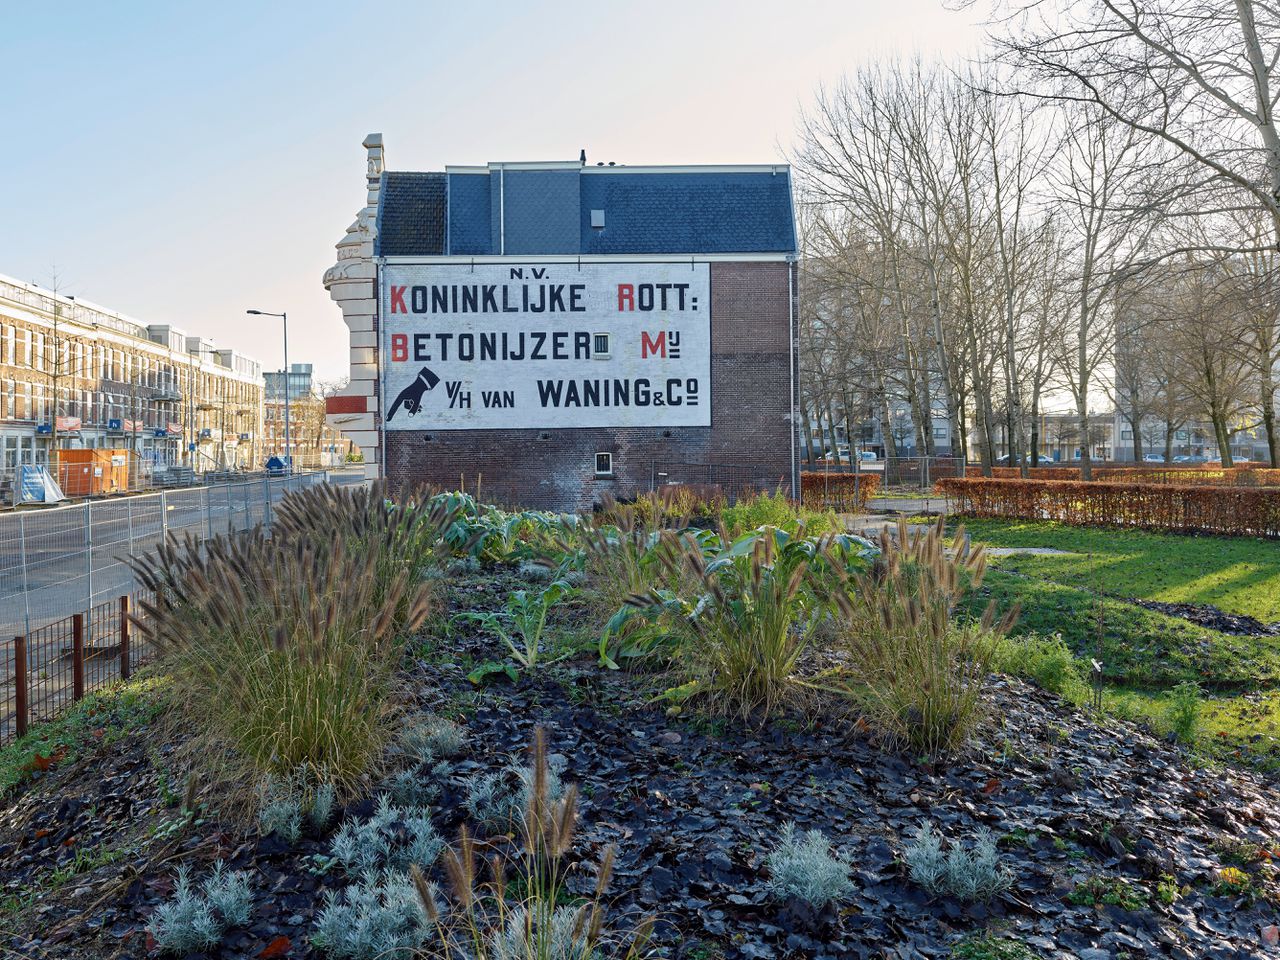 Het oude hoofdkantoor van de Koninklijke Rotterdamsche betonijzermaatschappij Van Waning & Co wacht als sinds 1989 op een nieuwe bestemming.